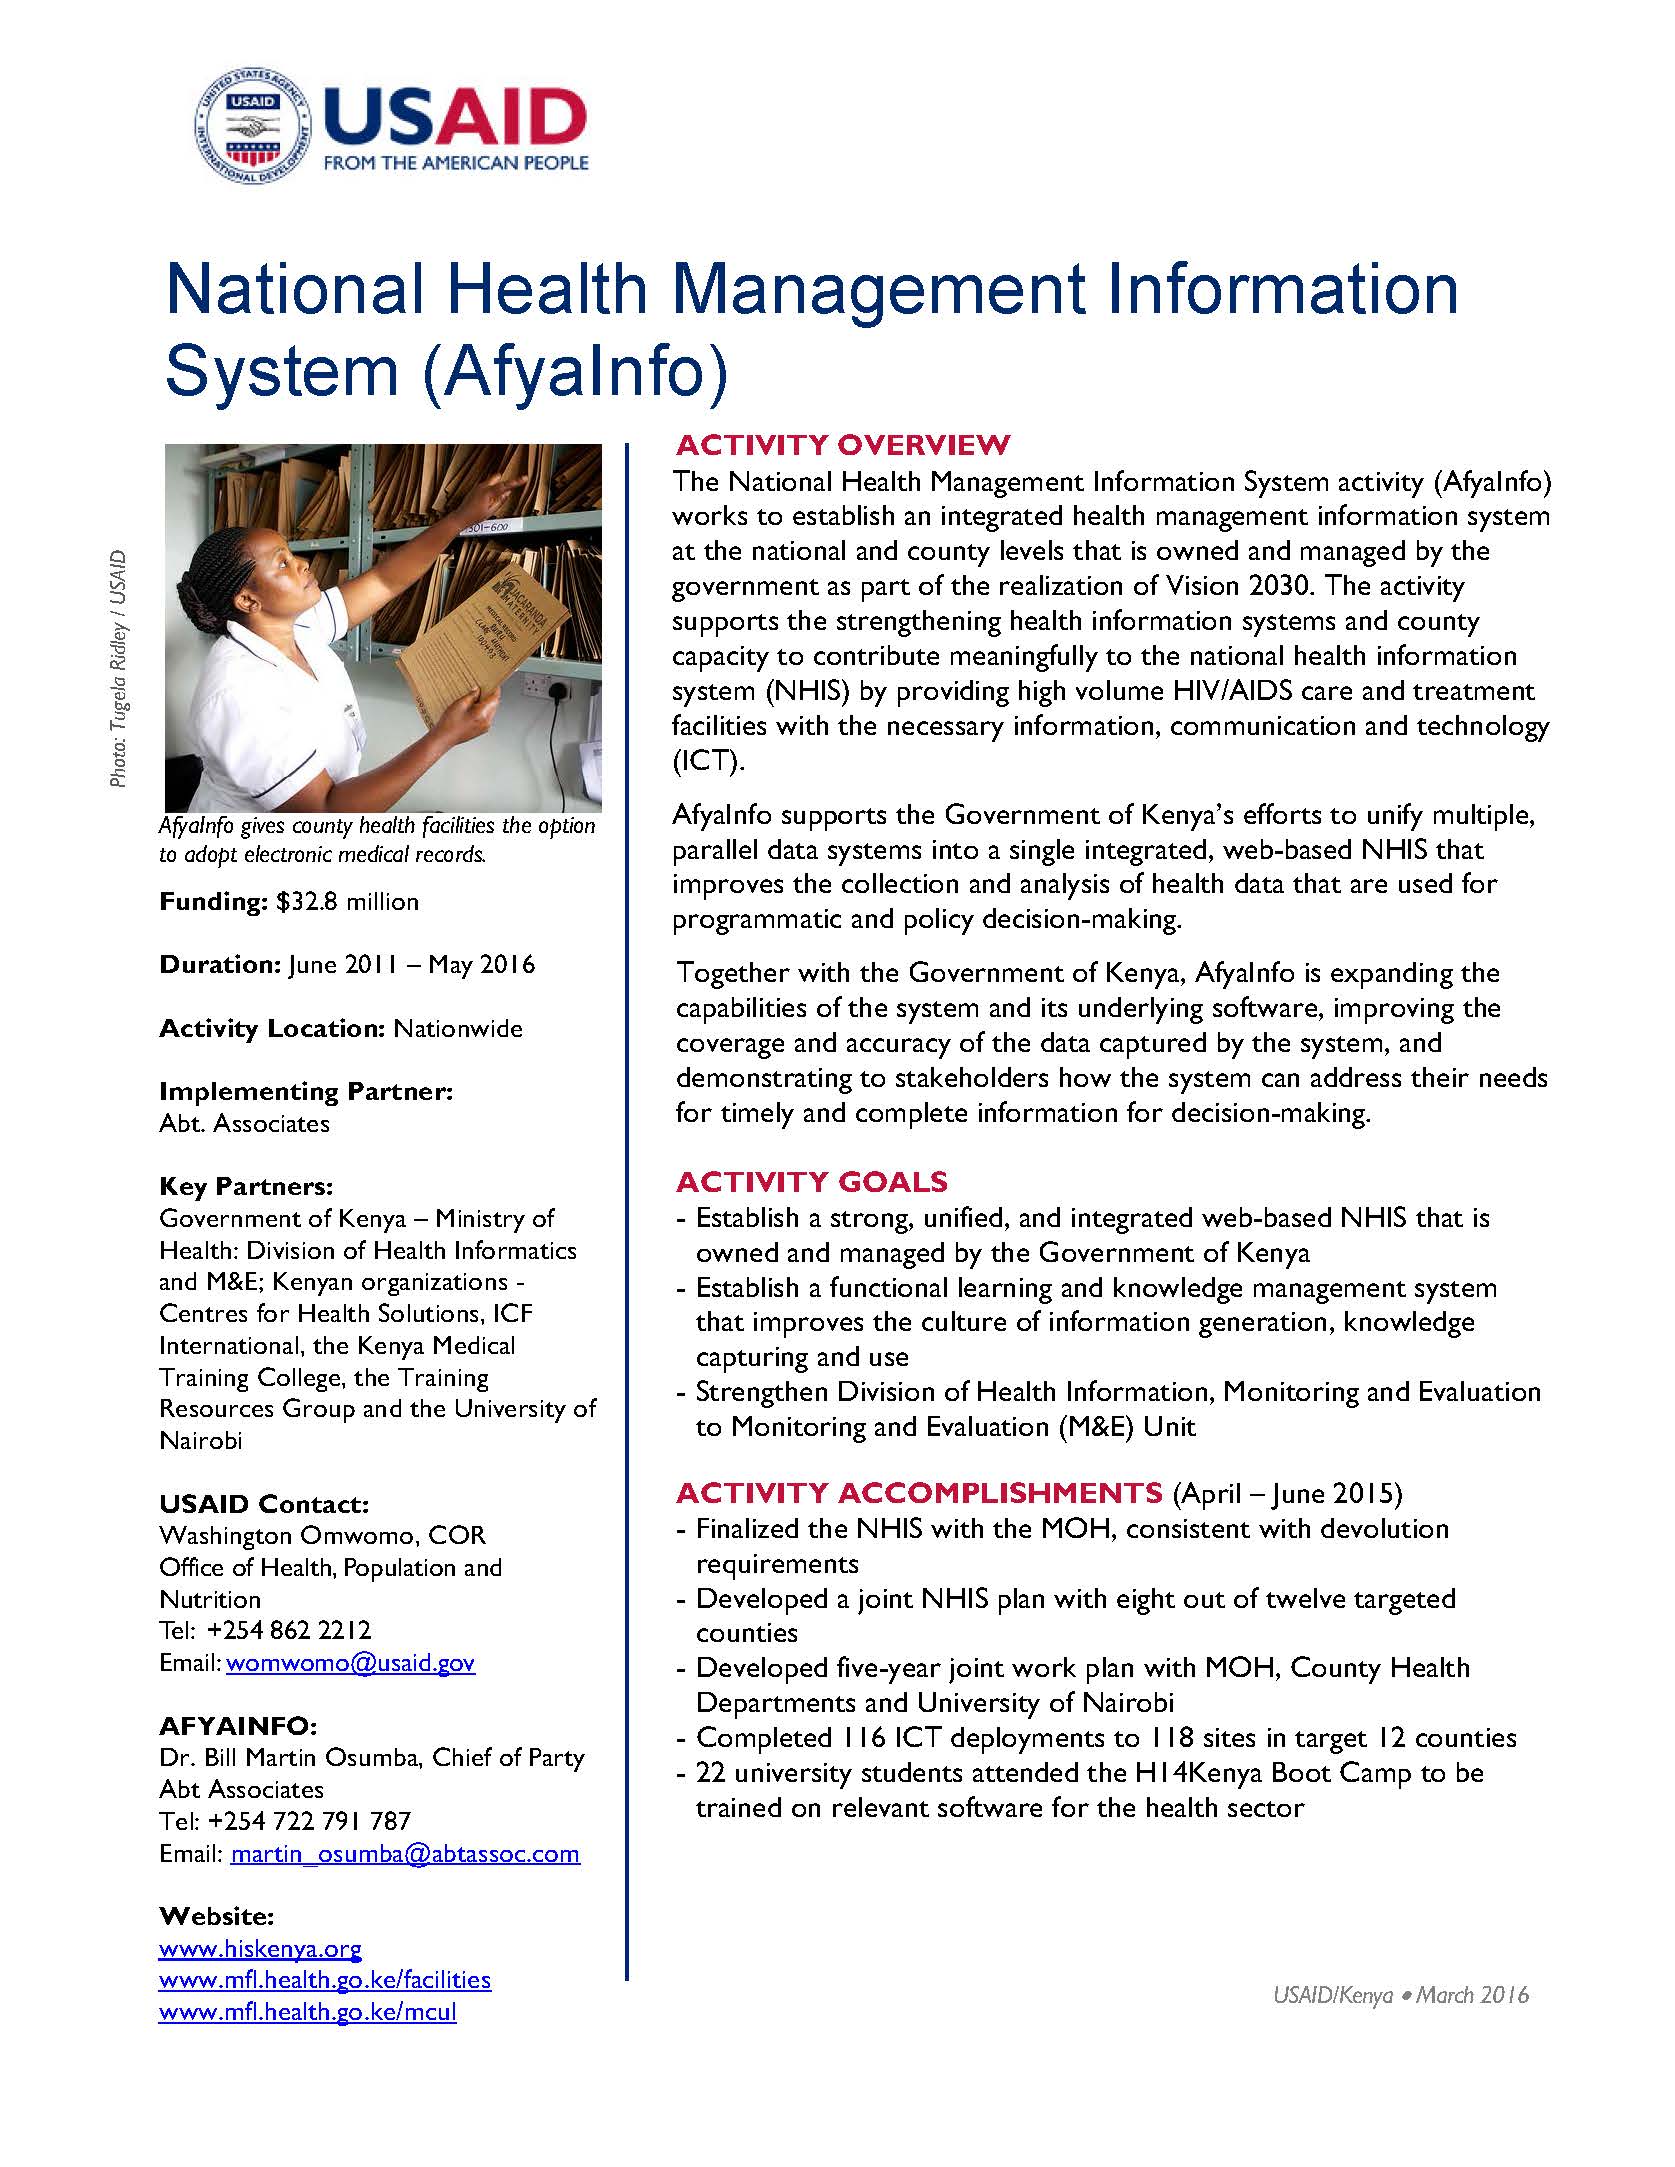 National Health Management Information System (AfyaInfo)